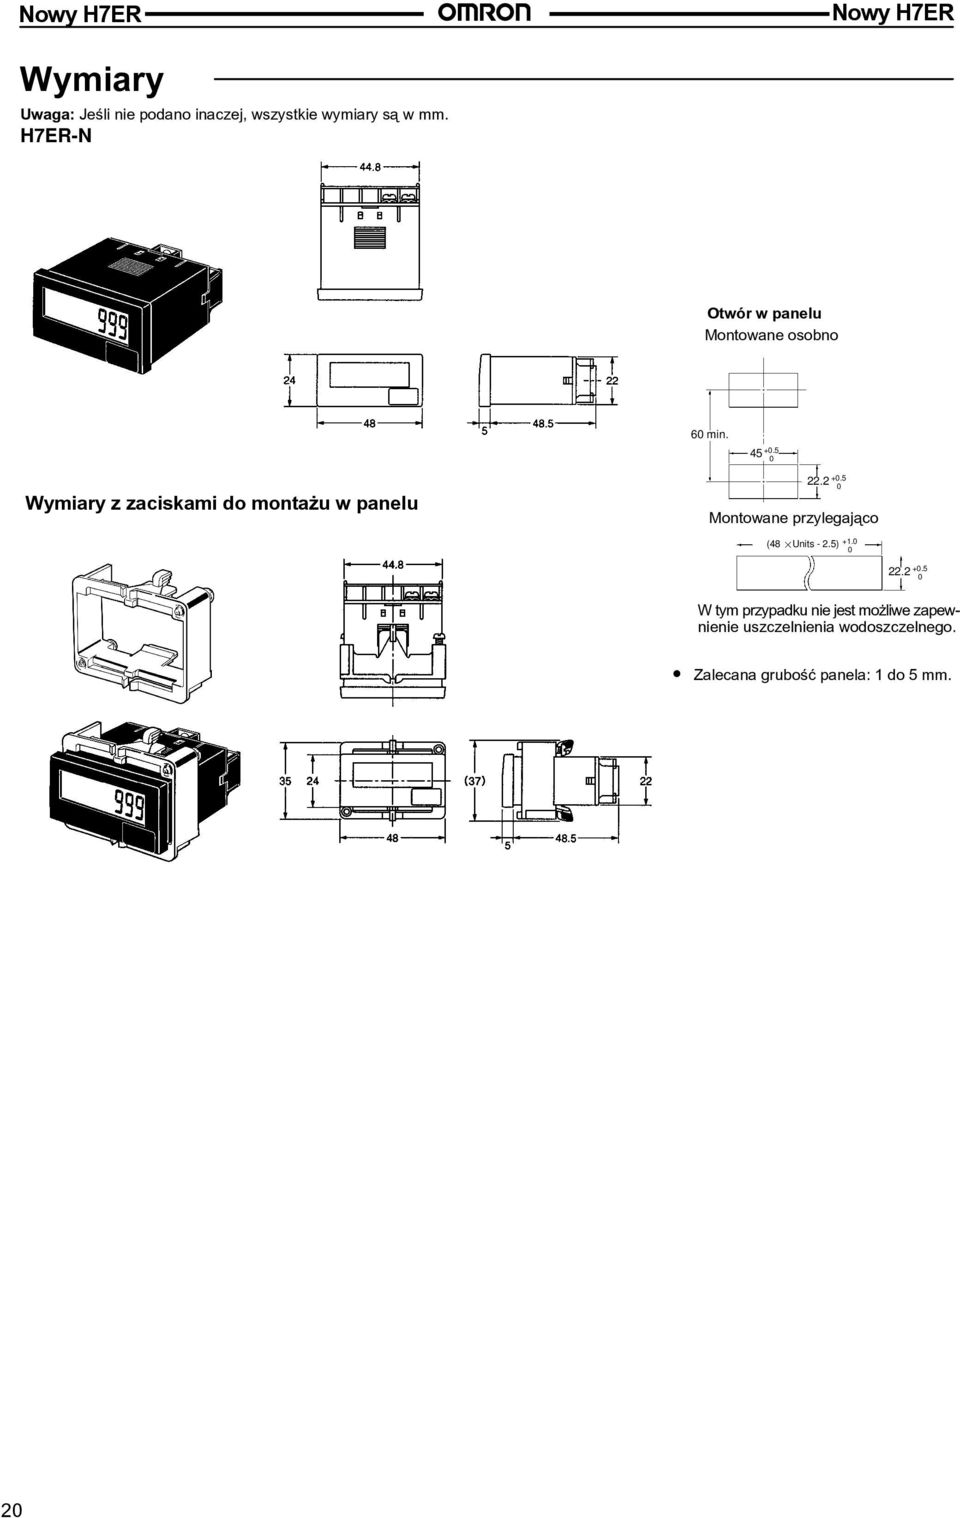 5 Wymiary z zaciskami do monta u w panelu 22.2 +.5 Montowane przylegaj¹co (48 Units - 2.